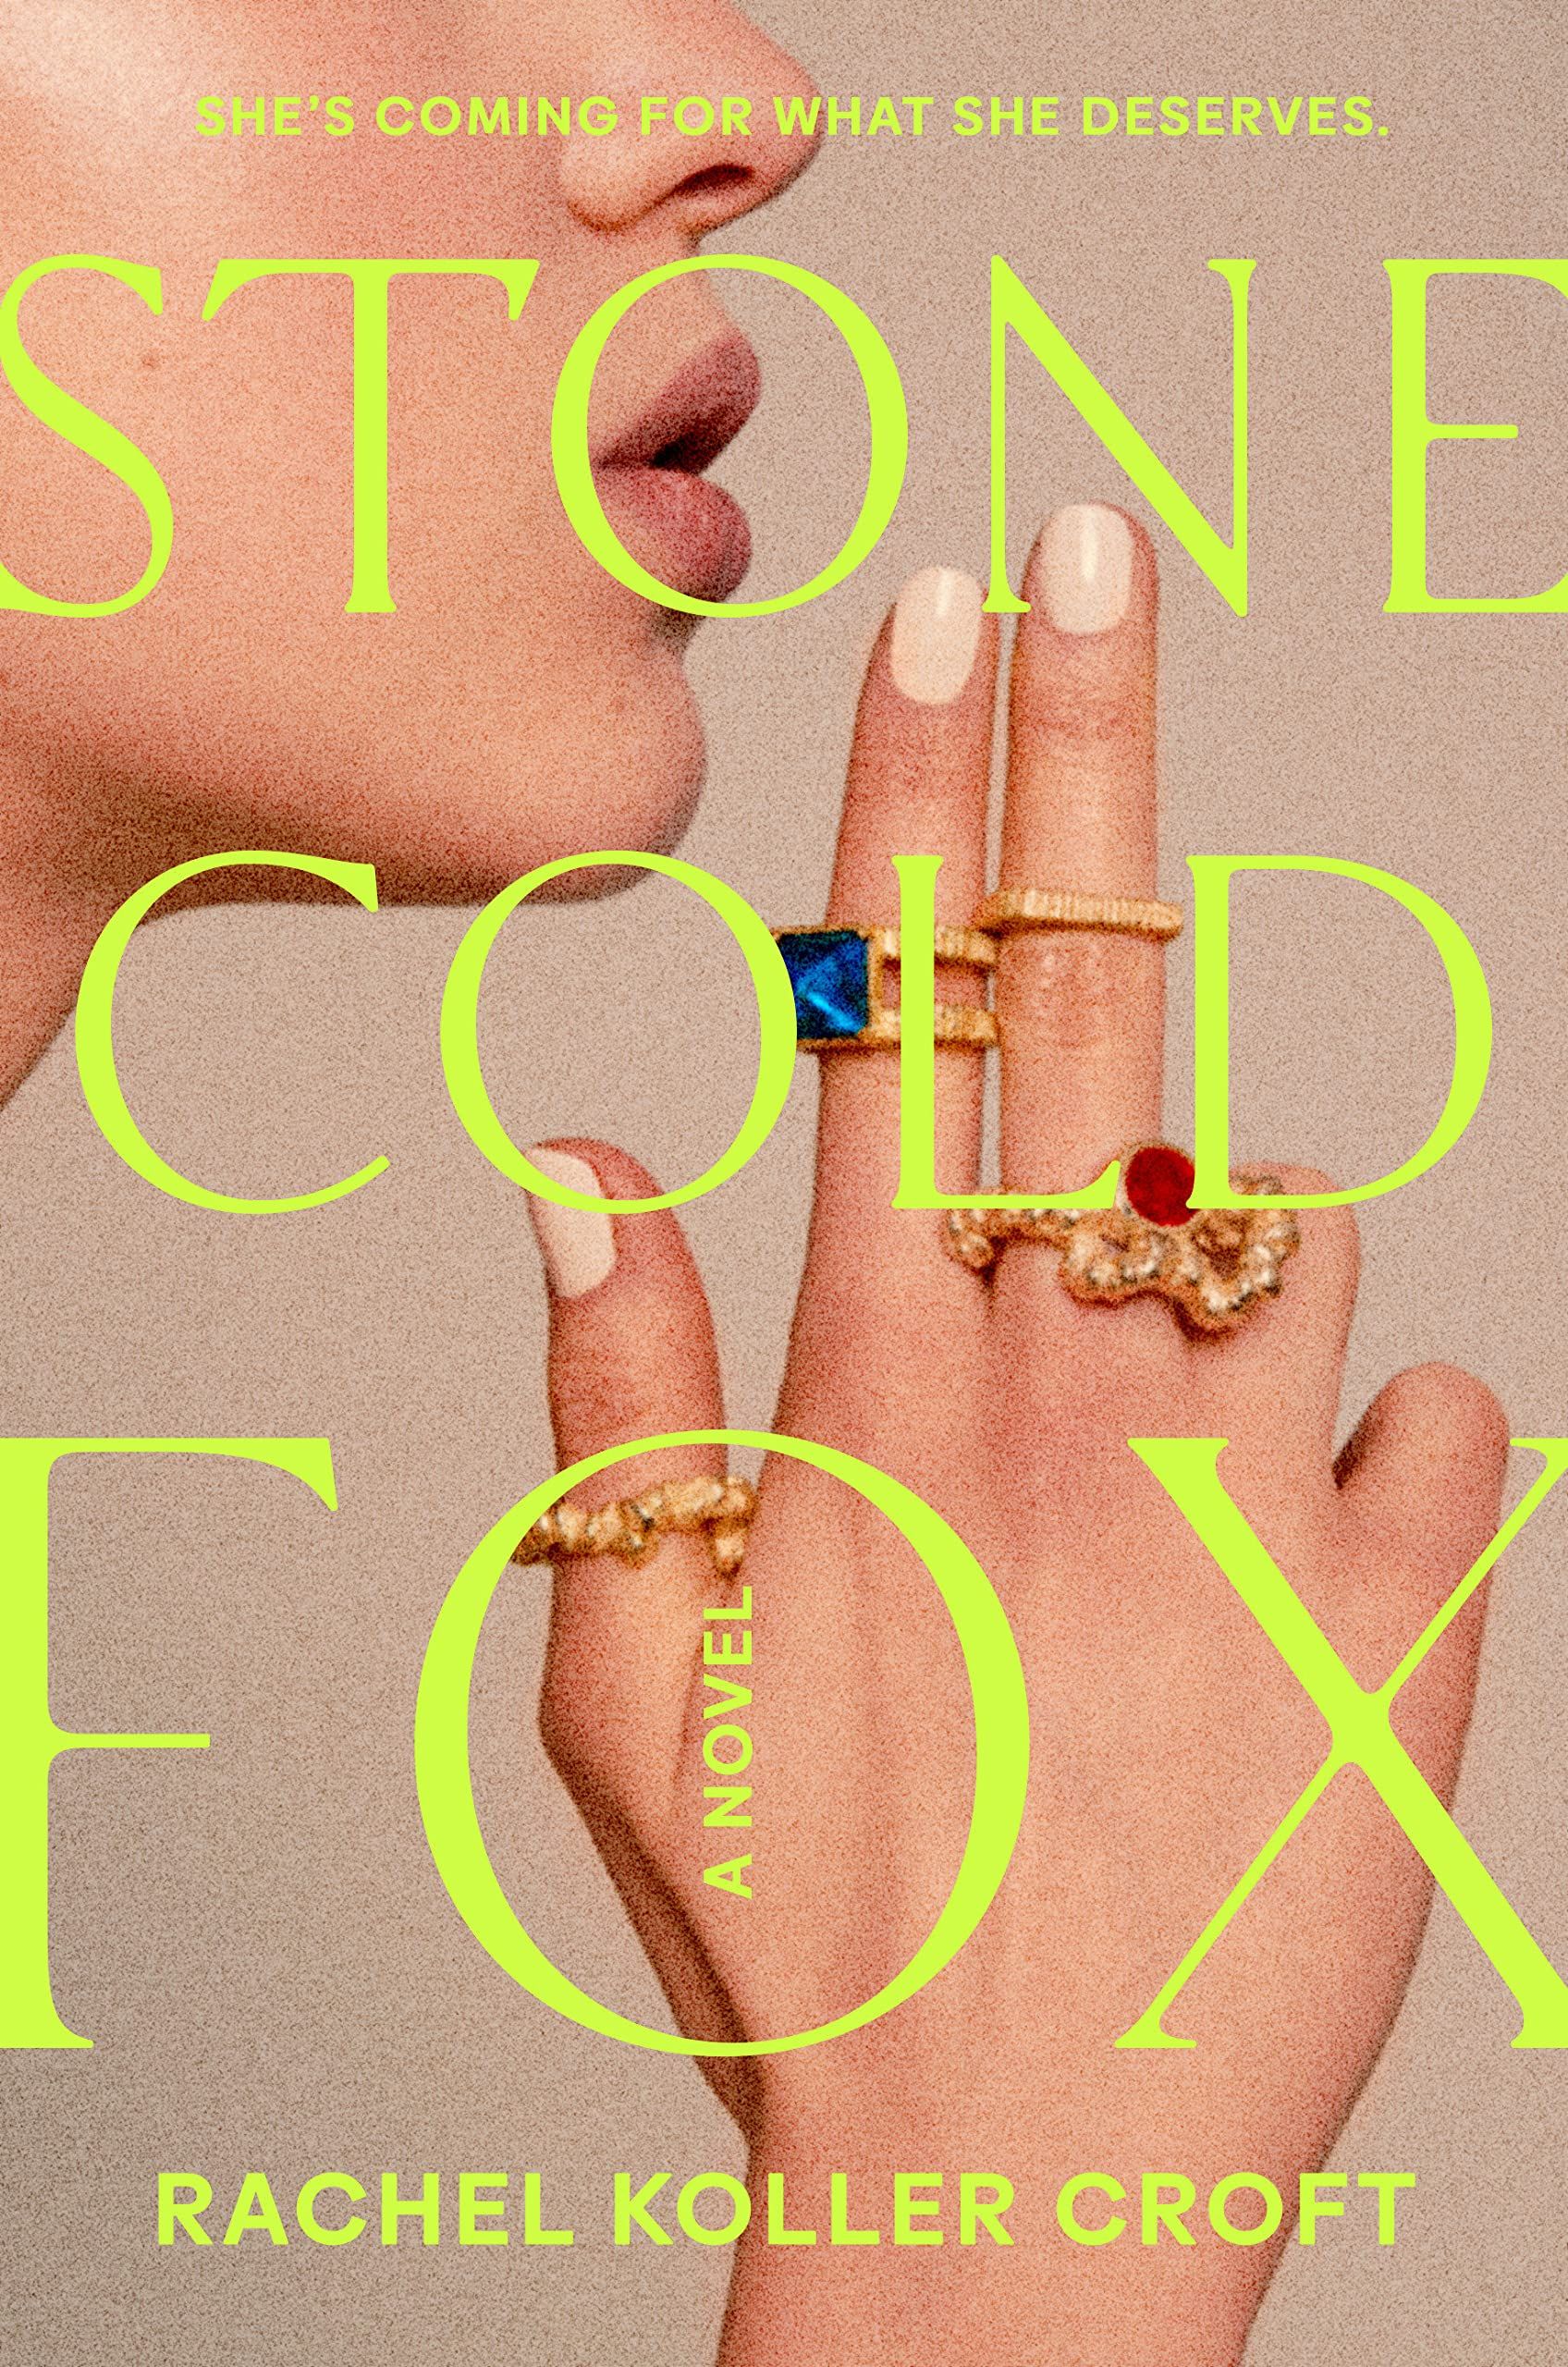 Stone Cold Fox cover